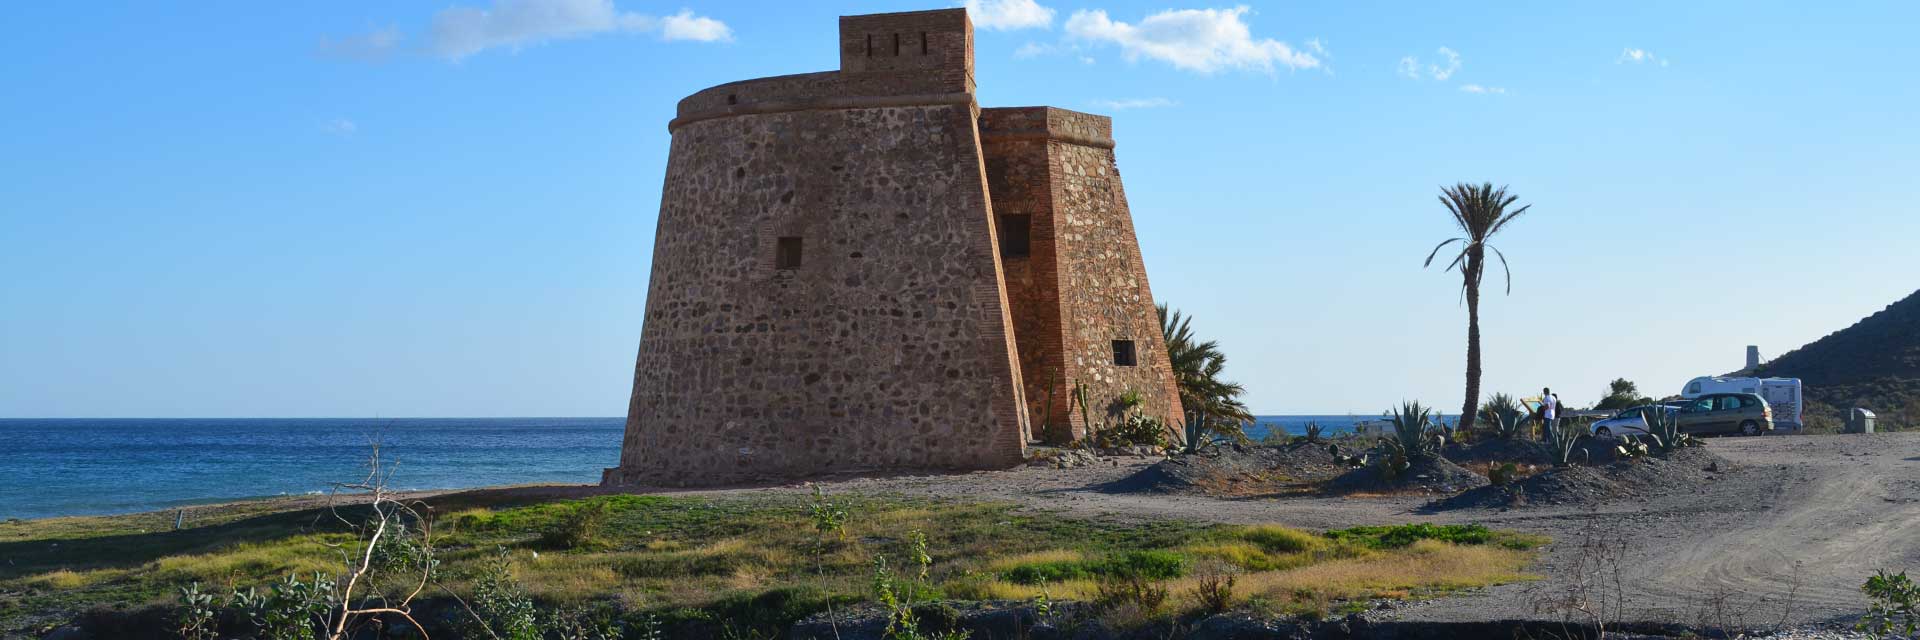 Castillo Macenas en Mojácar ▶ Costa de Almería